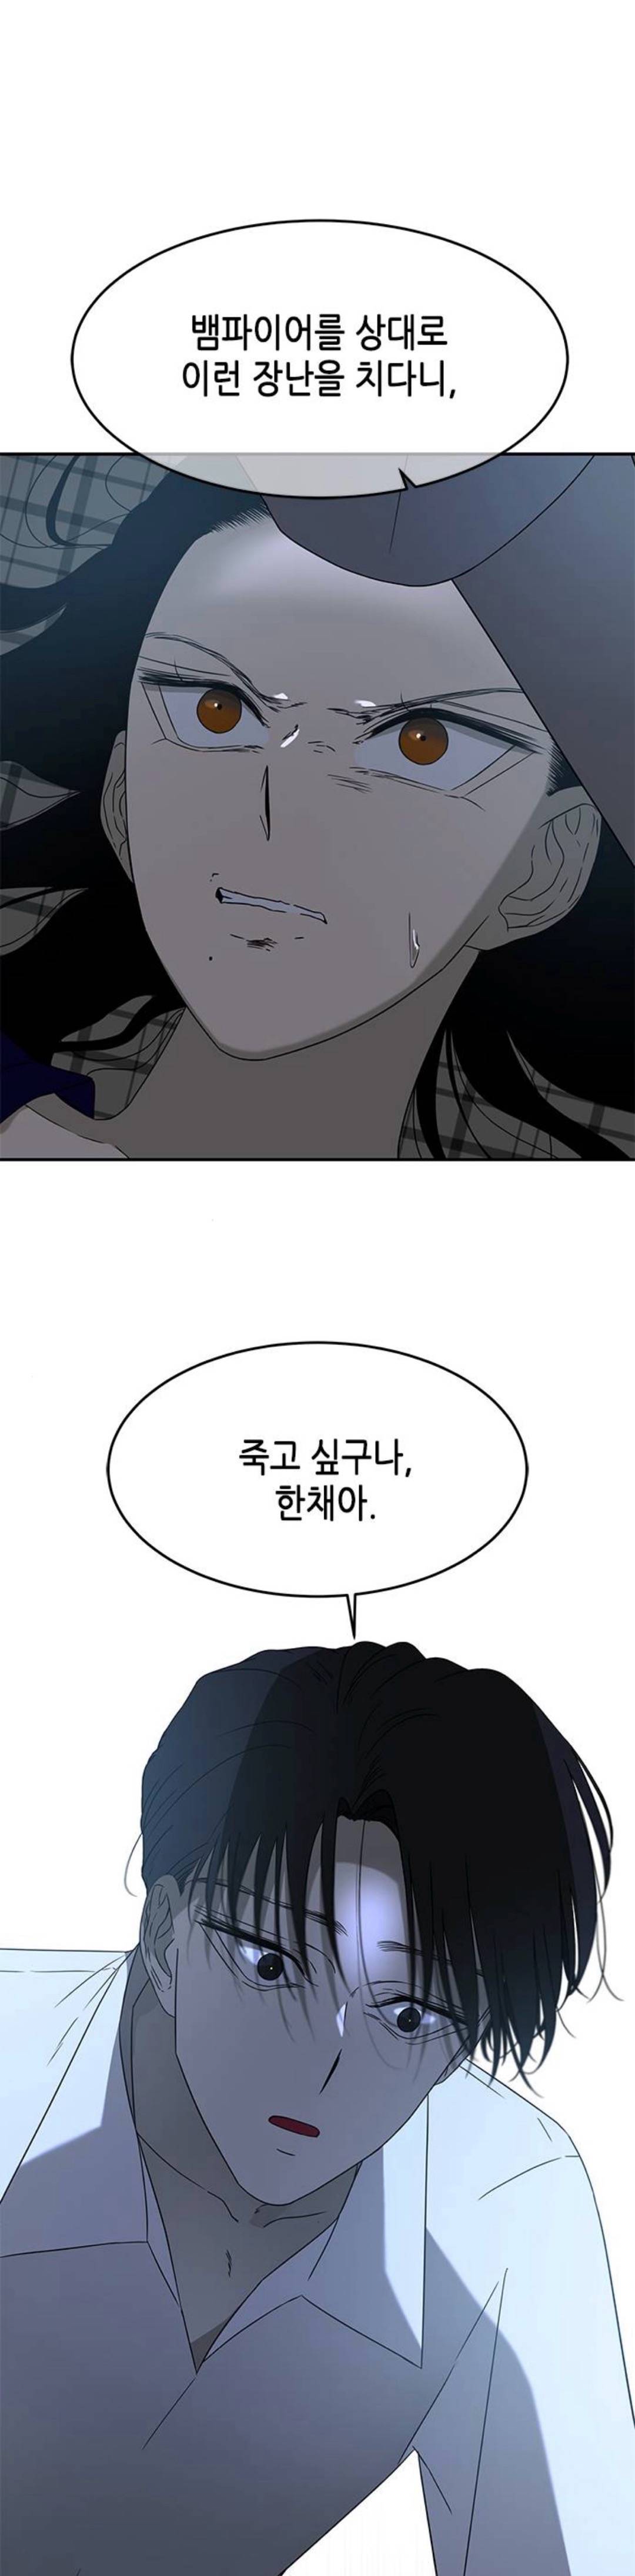 웹툰 올가미 박윤수 헛소리 모음집 | 인스티즈